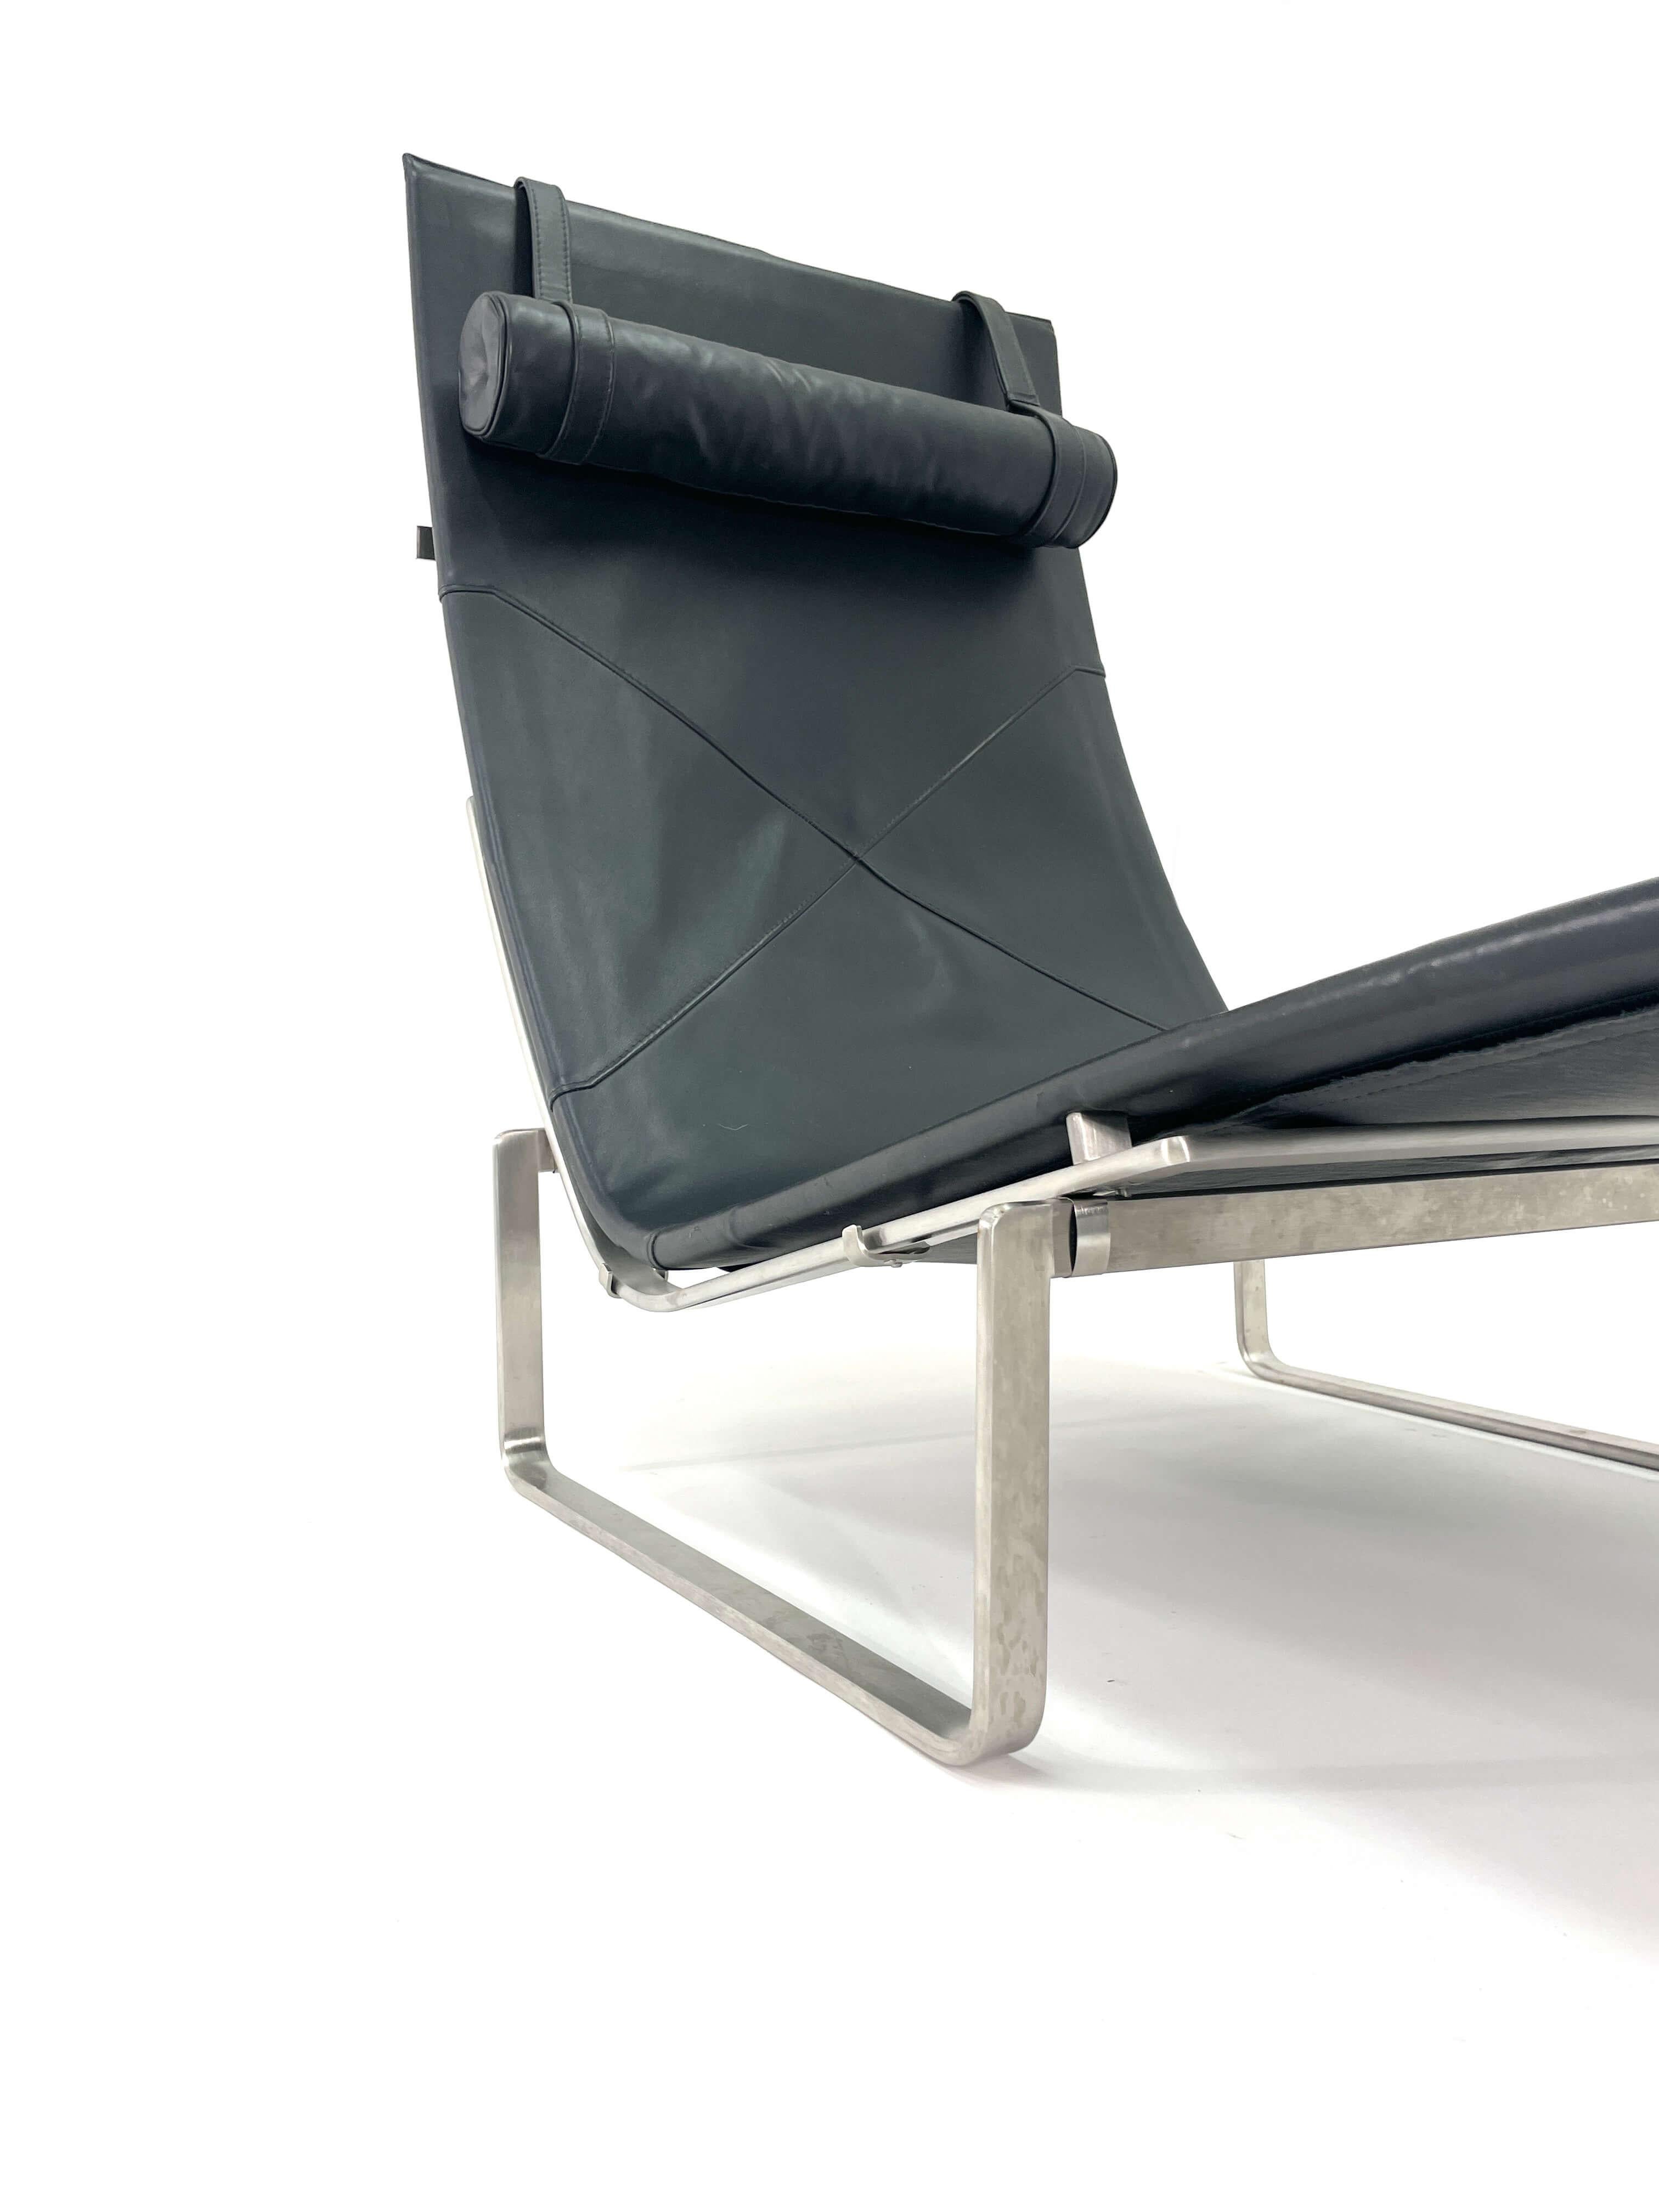 20th Century Poul Kjaerholm Chaise Lounge Model PK24 for Fritz Hansen For Sale